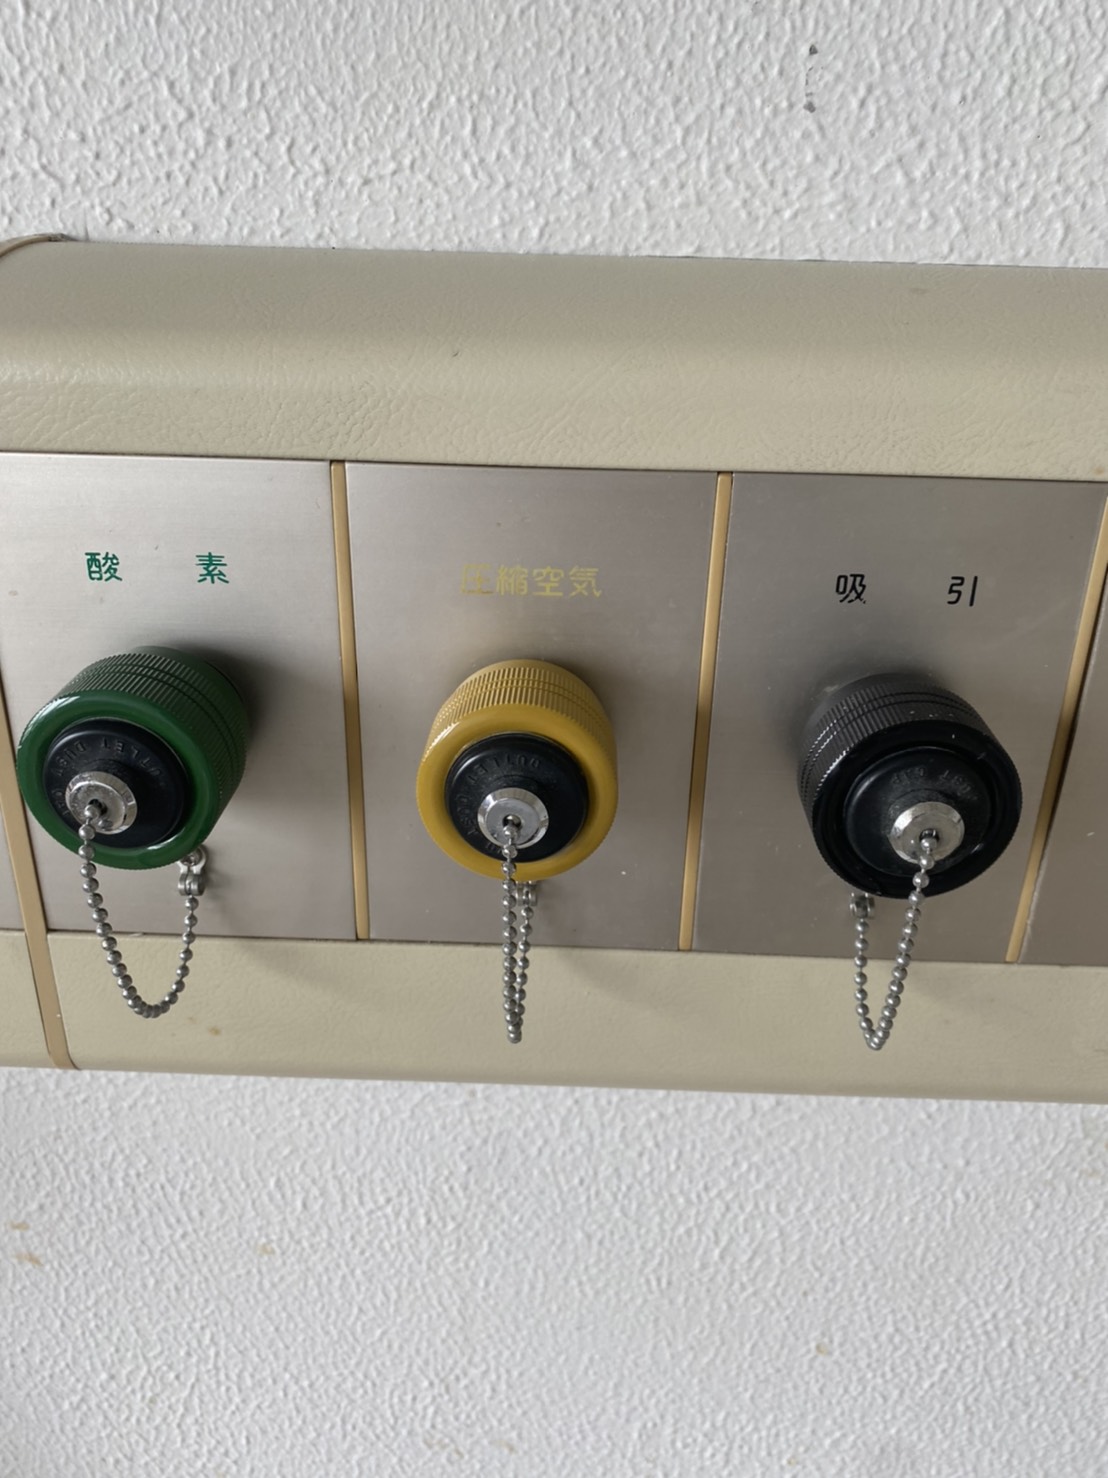 愛知県名古屋市 某病院 医療ガス設備 改修工事